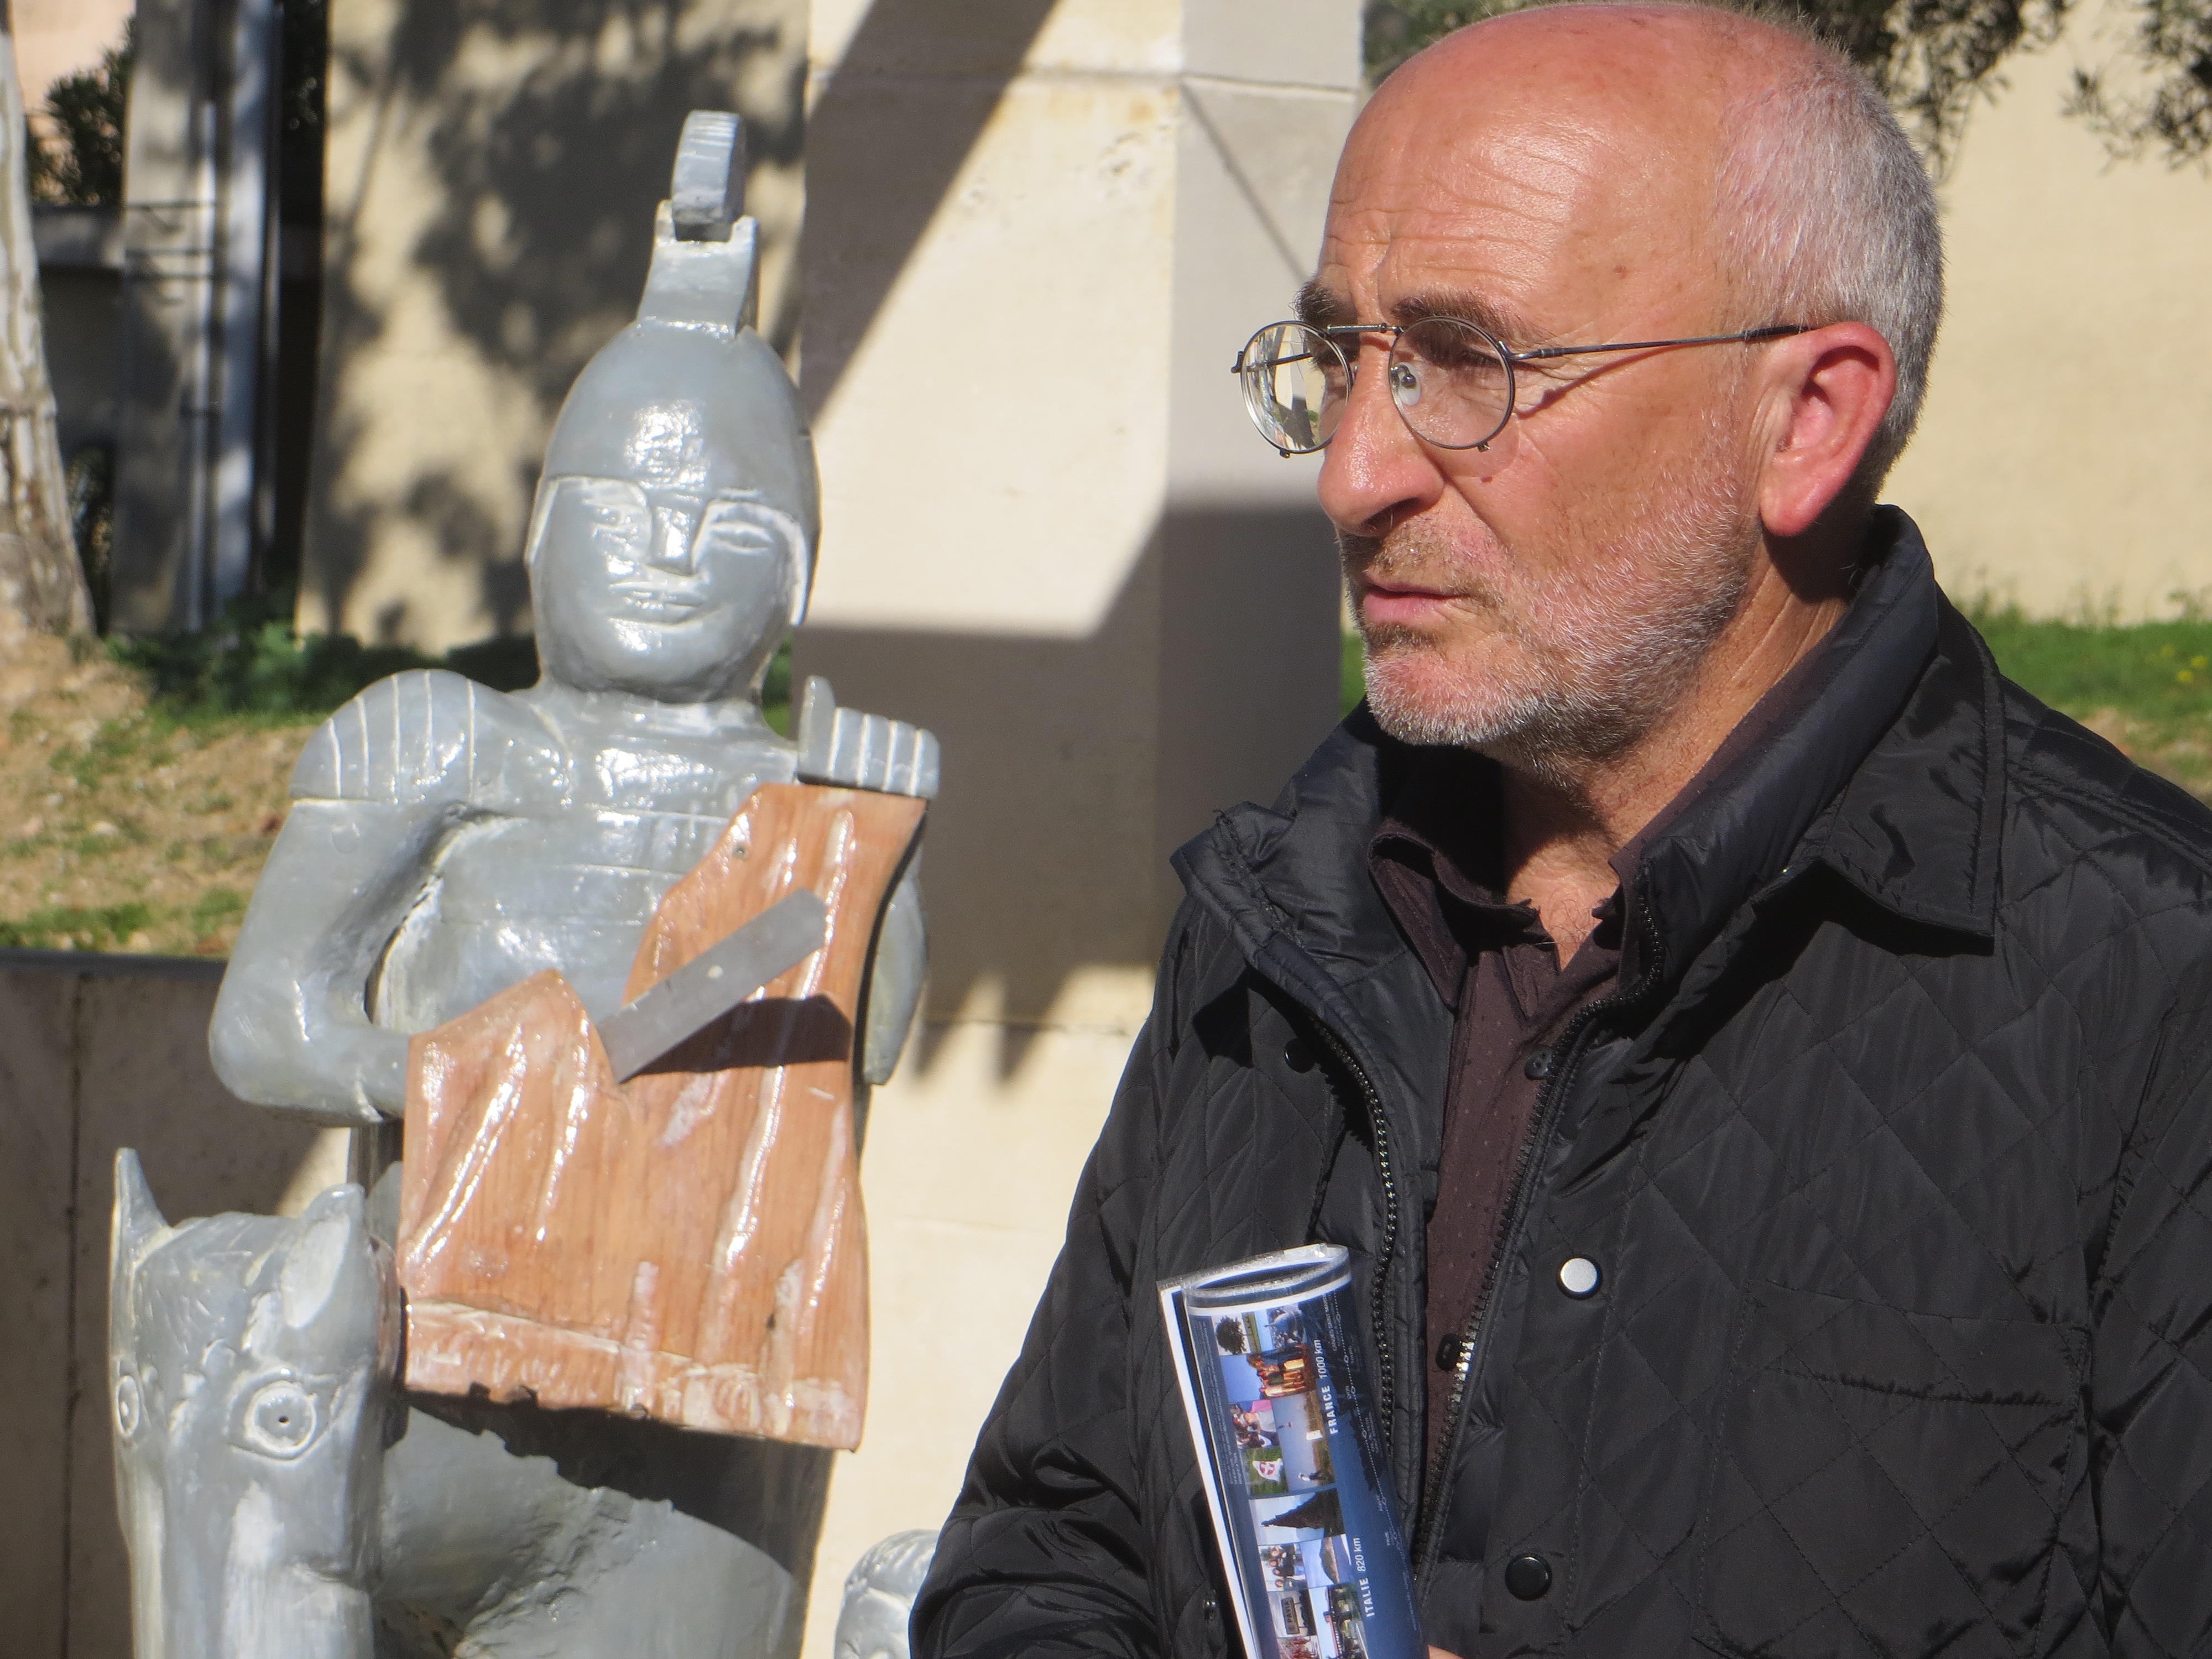 Christian Andreani près de la statue de San Martinu, une oeuvre d'André Truchon de Patrimoniu. Photo Maria Cleia Andreani.